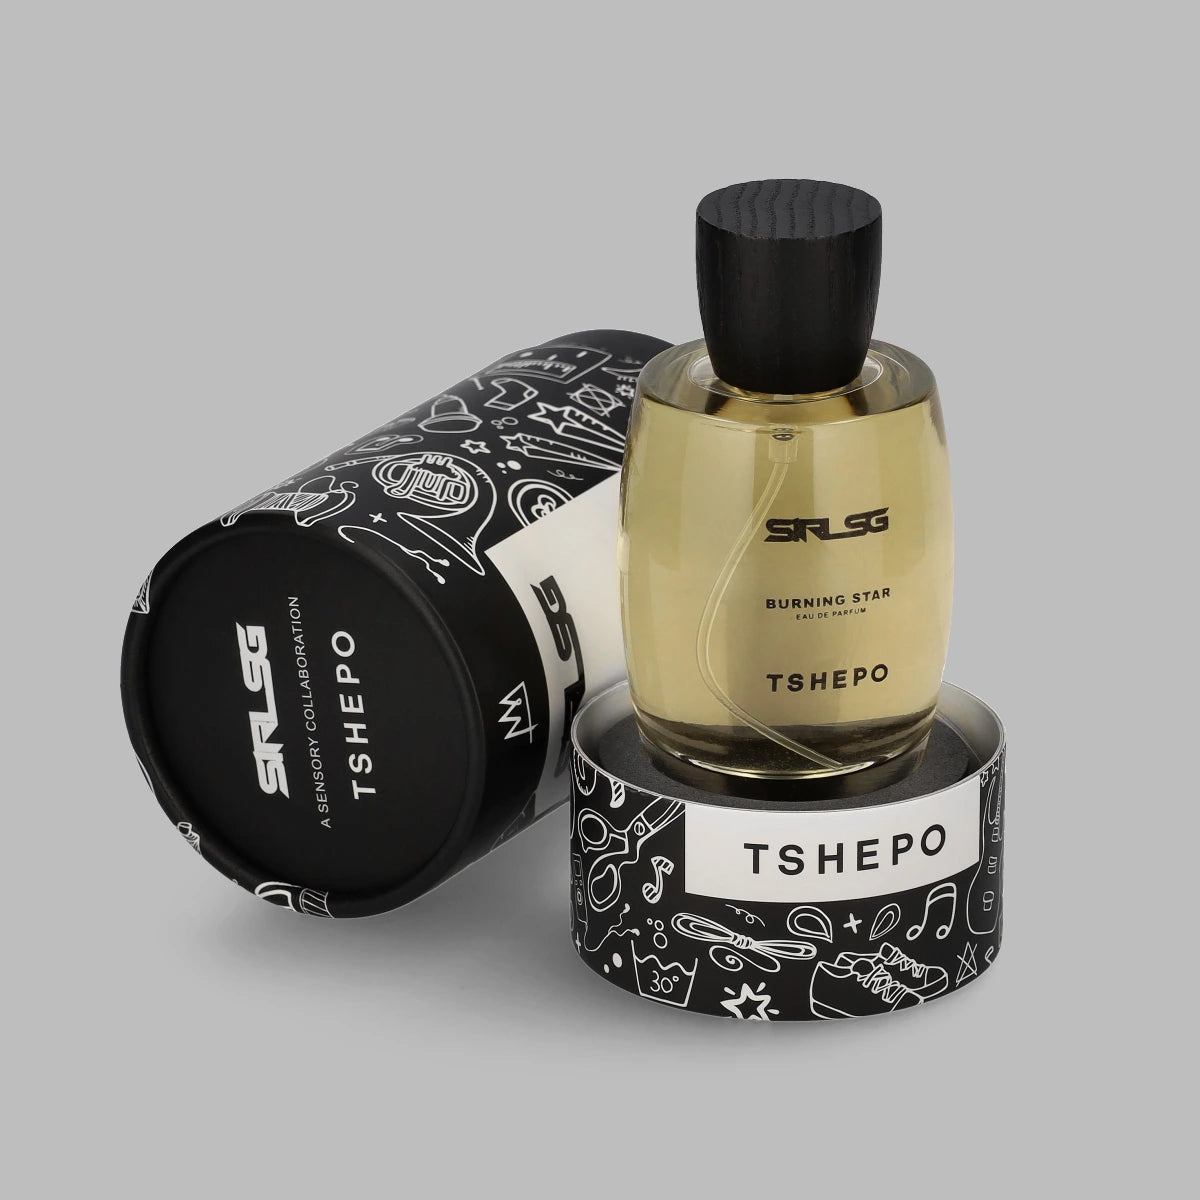 TSHEPO x Sir LSG Parfum